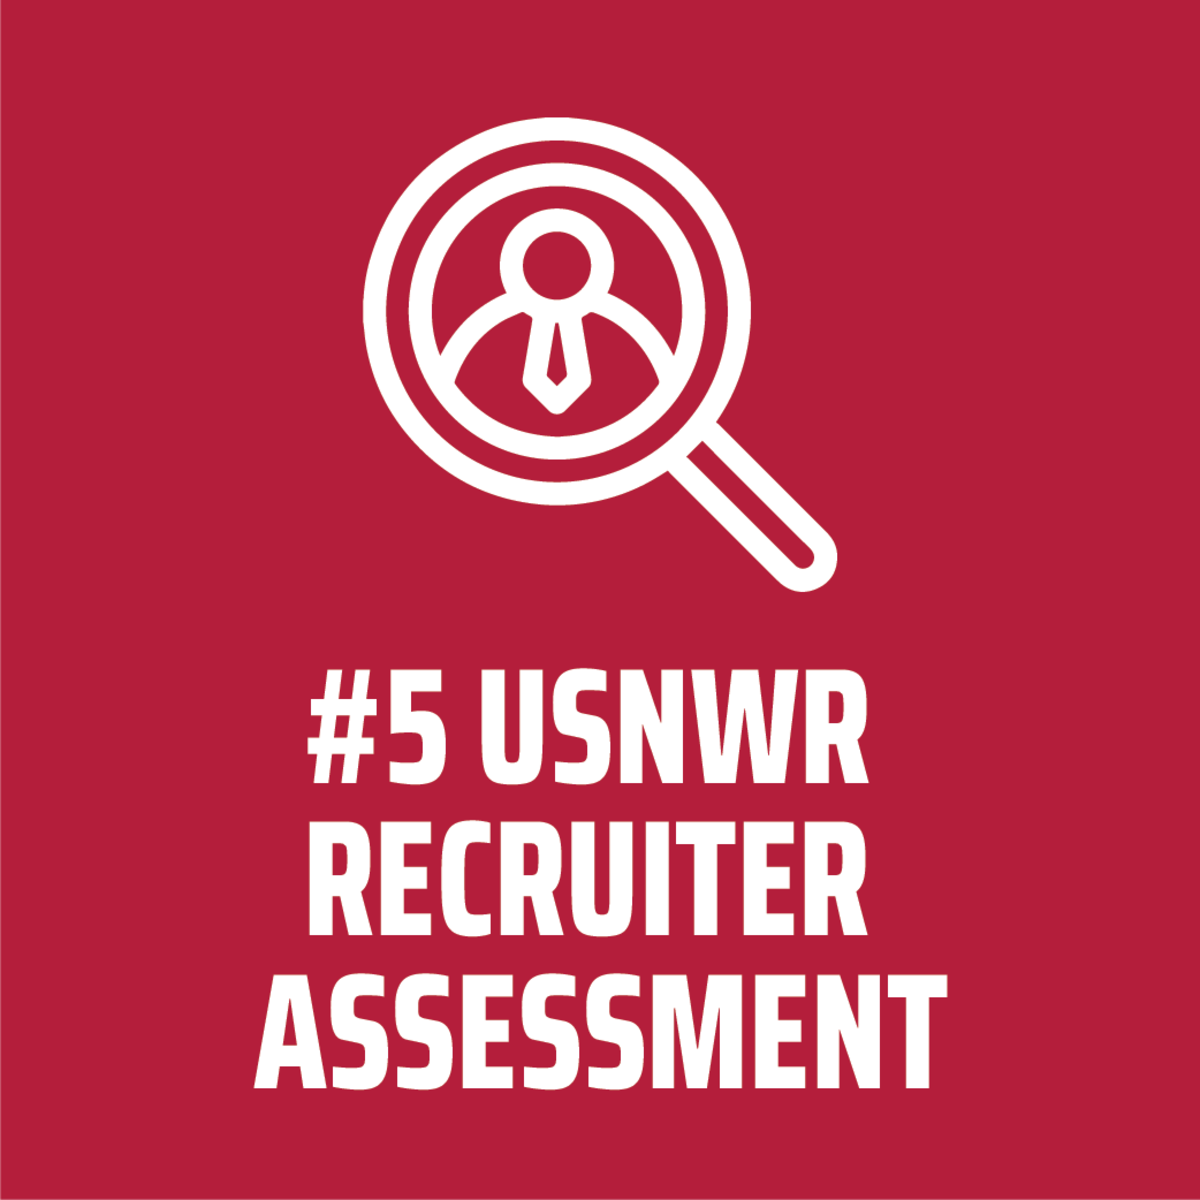 USNWR - #5 recruiter assessment 